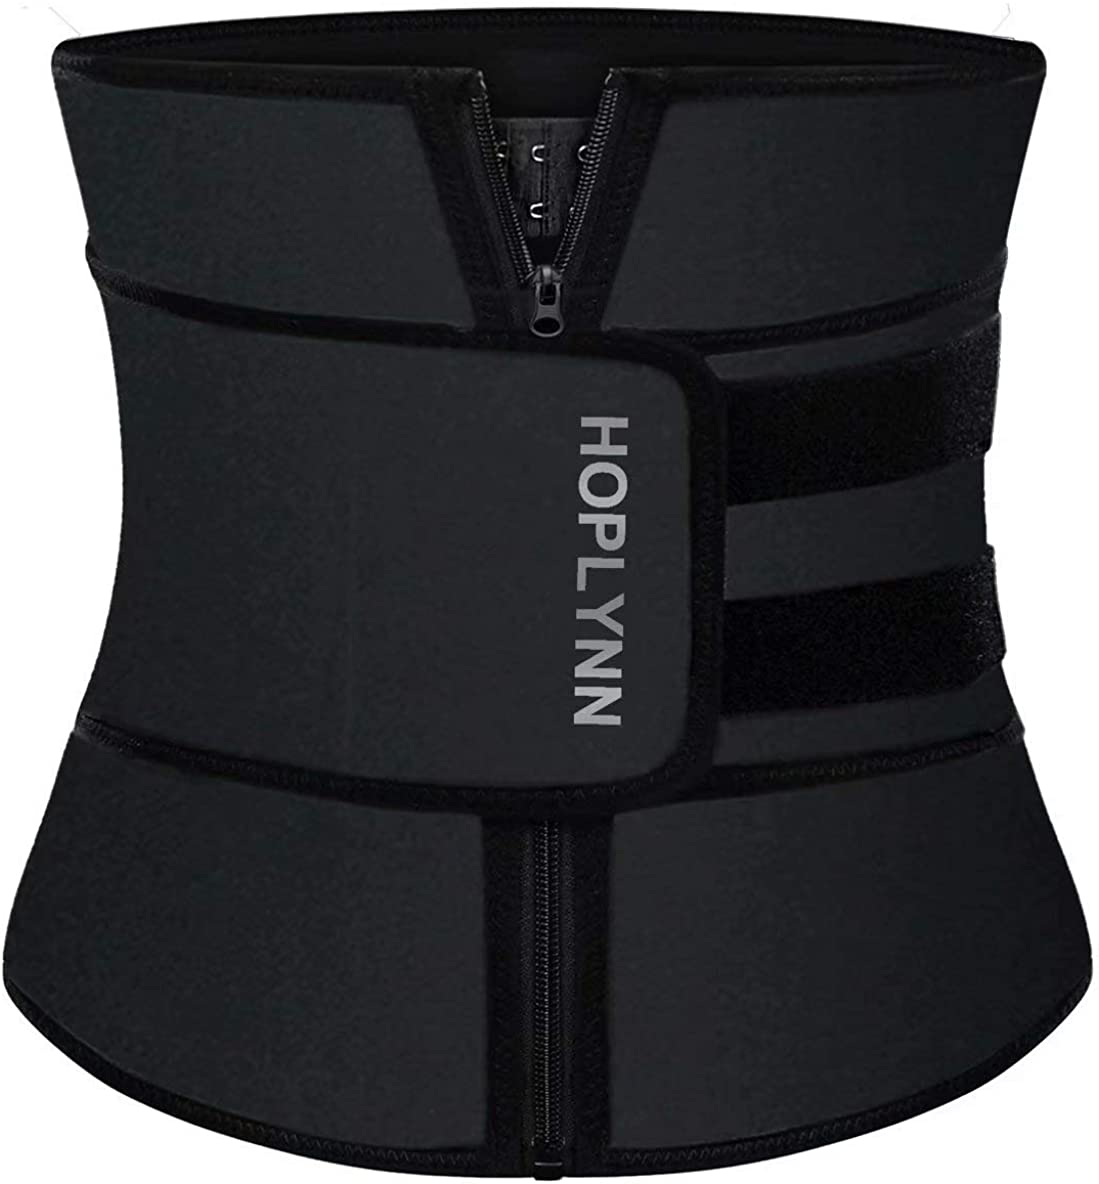 GetUSCart- HOPLYNN Neoprene Sauna Sweat Waist Trainer Corset Trimmer Vest  for Women Weight Loss, Waist Cincher Shaper Slimmer Black Large